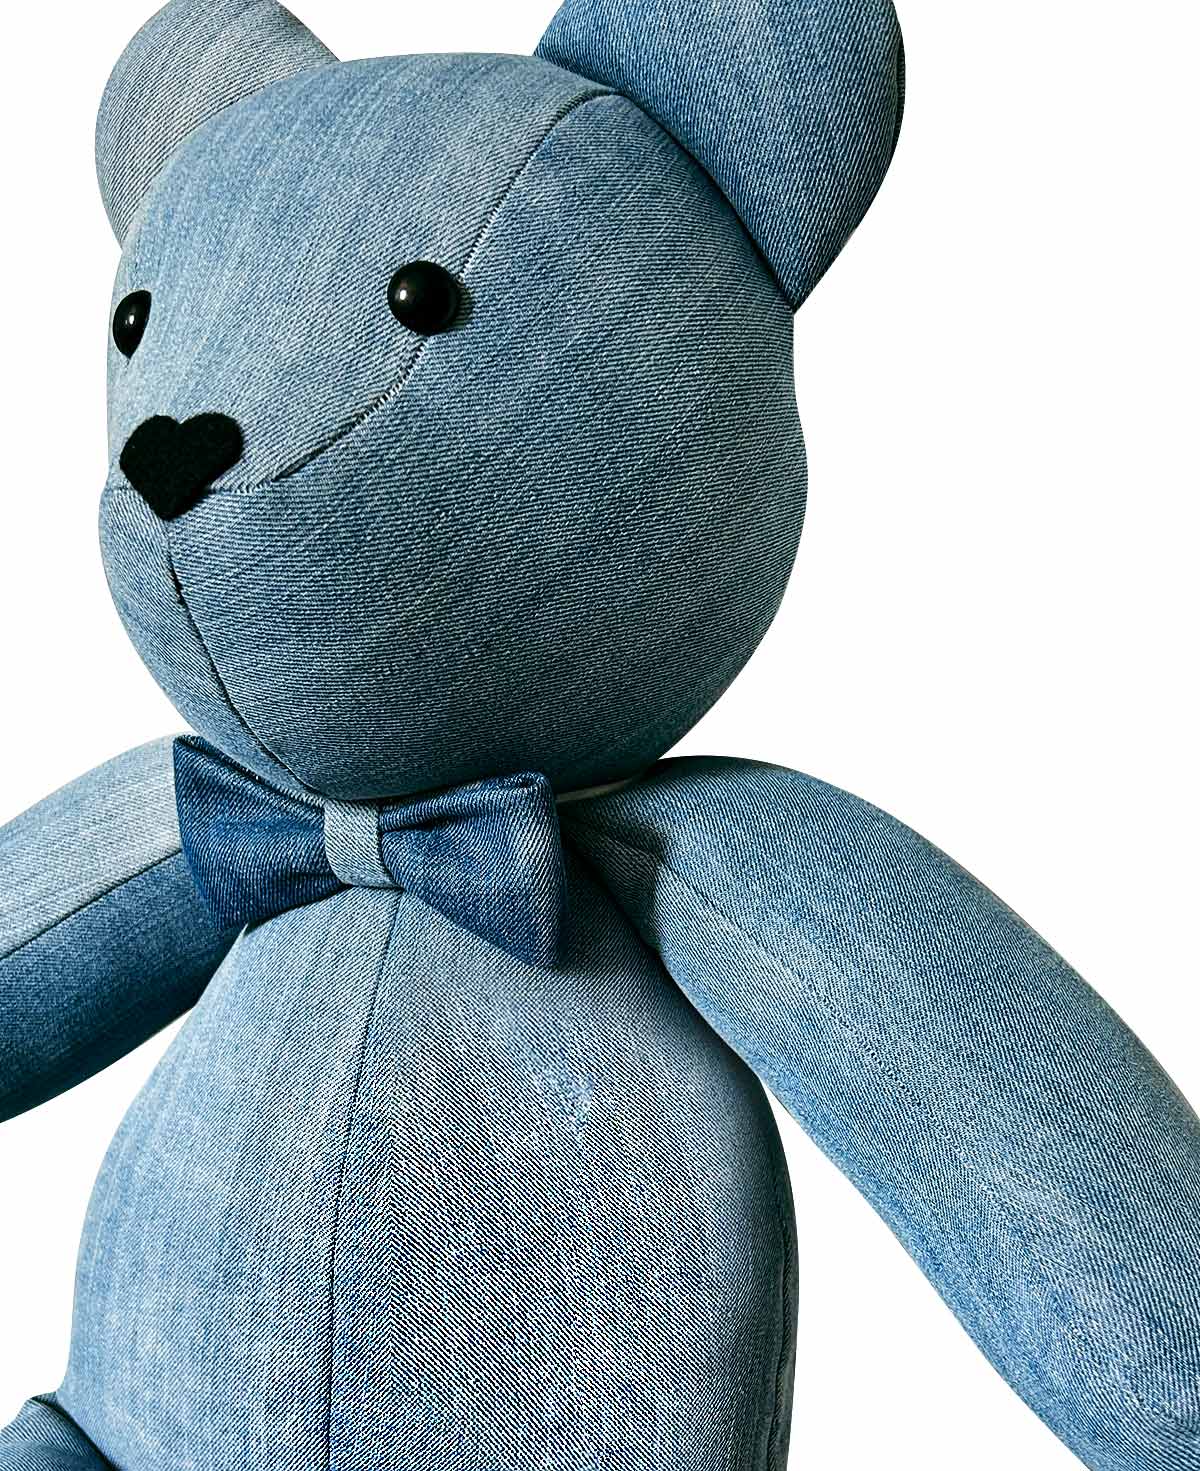 NOLAN The Teddy Bear - Autism Awareness Day